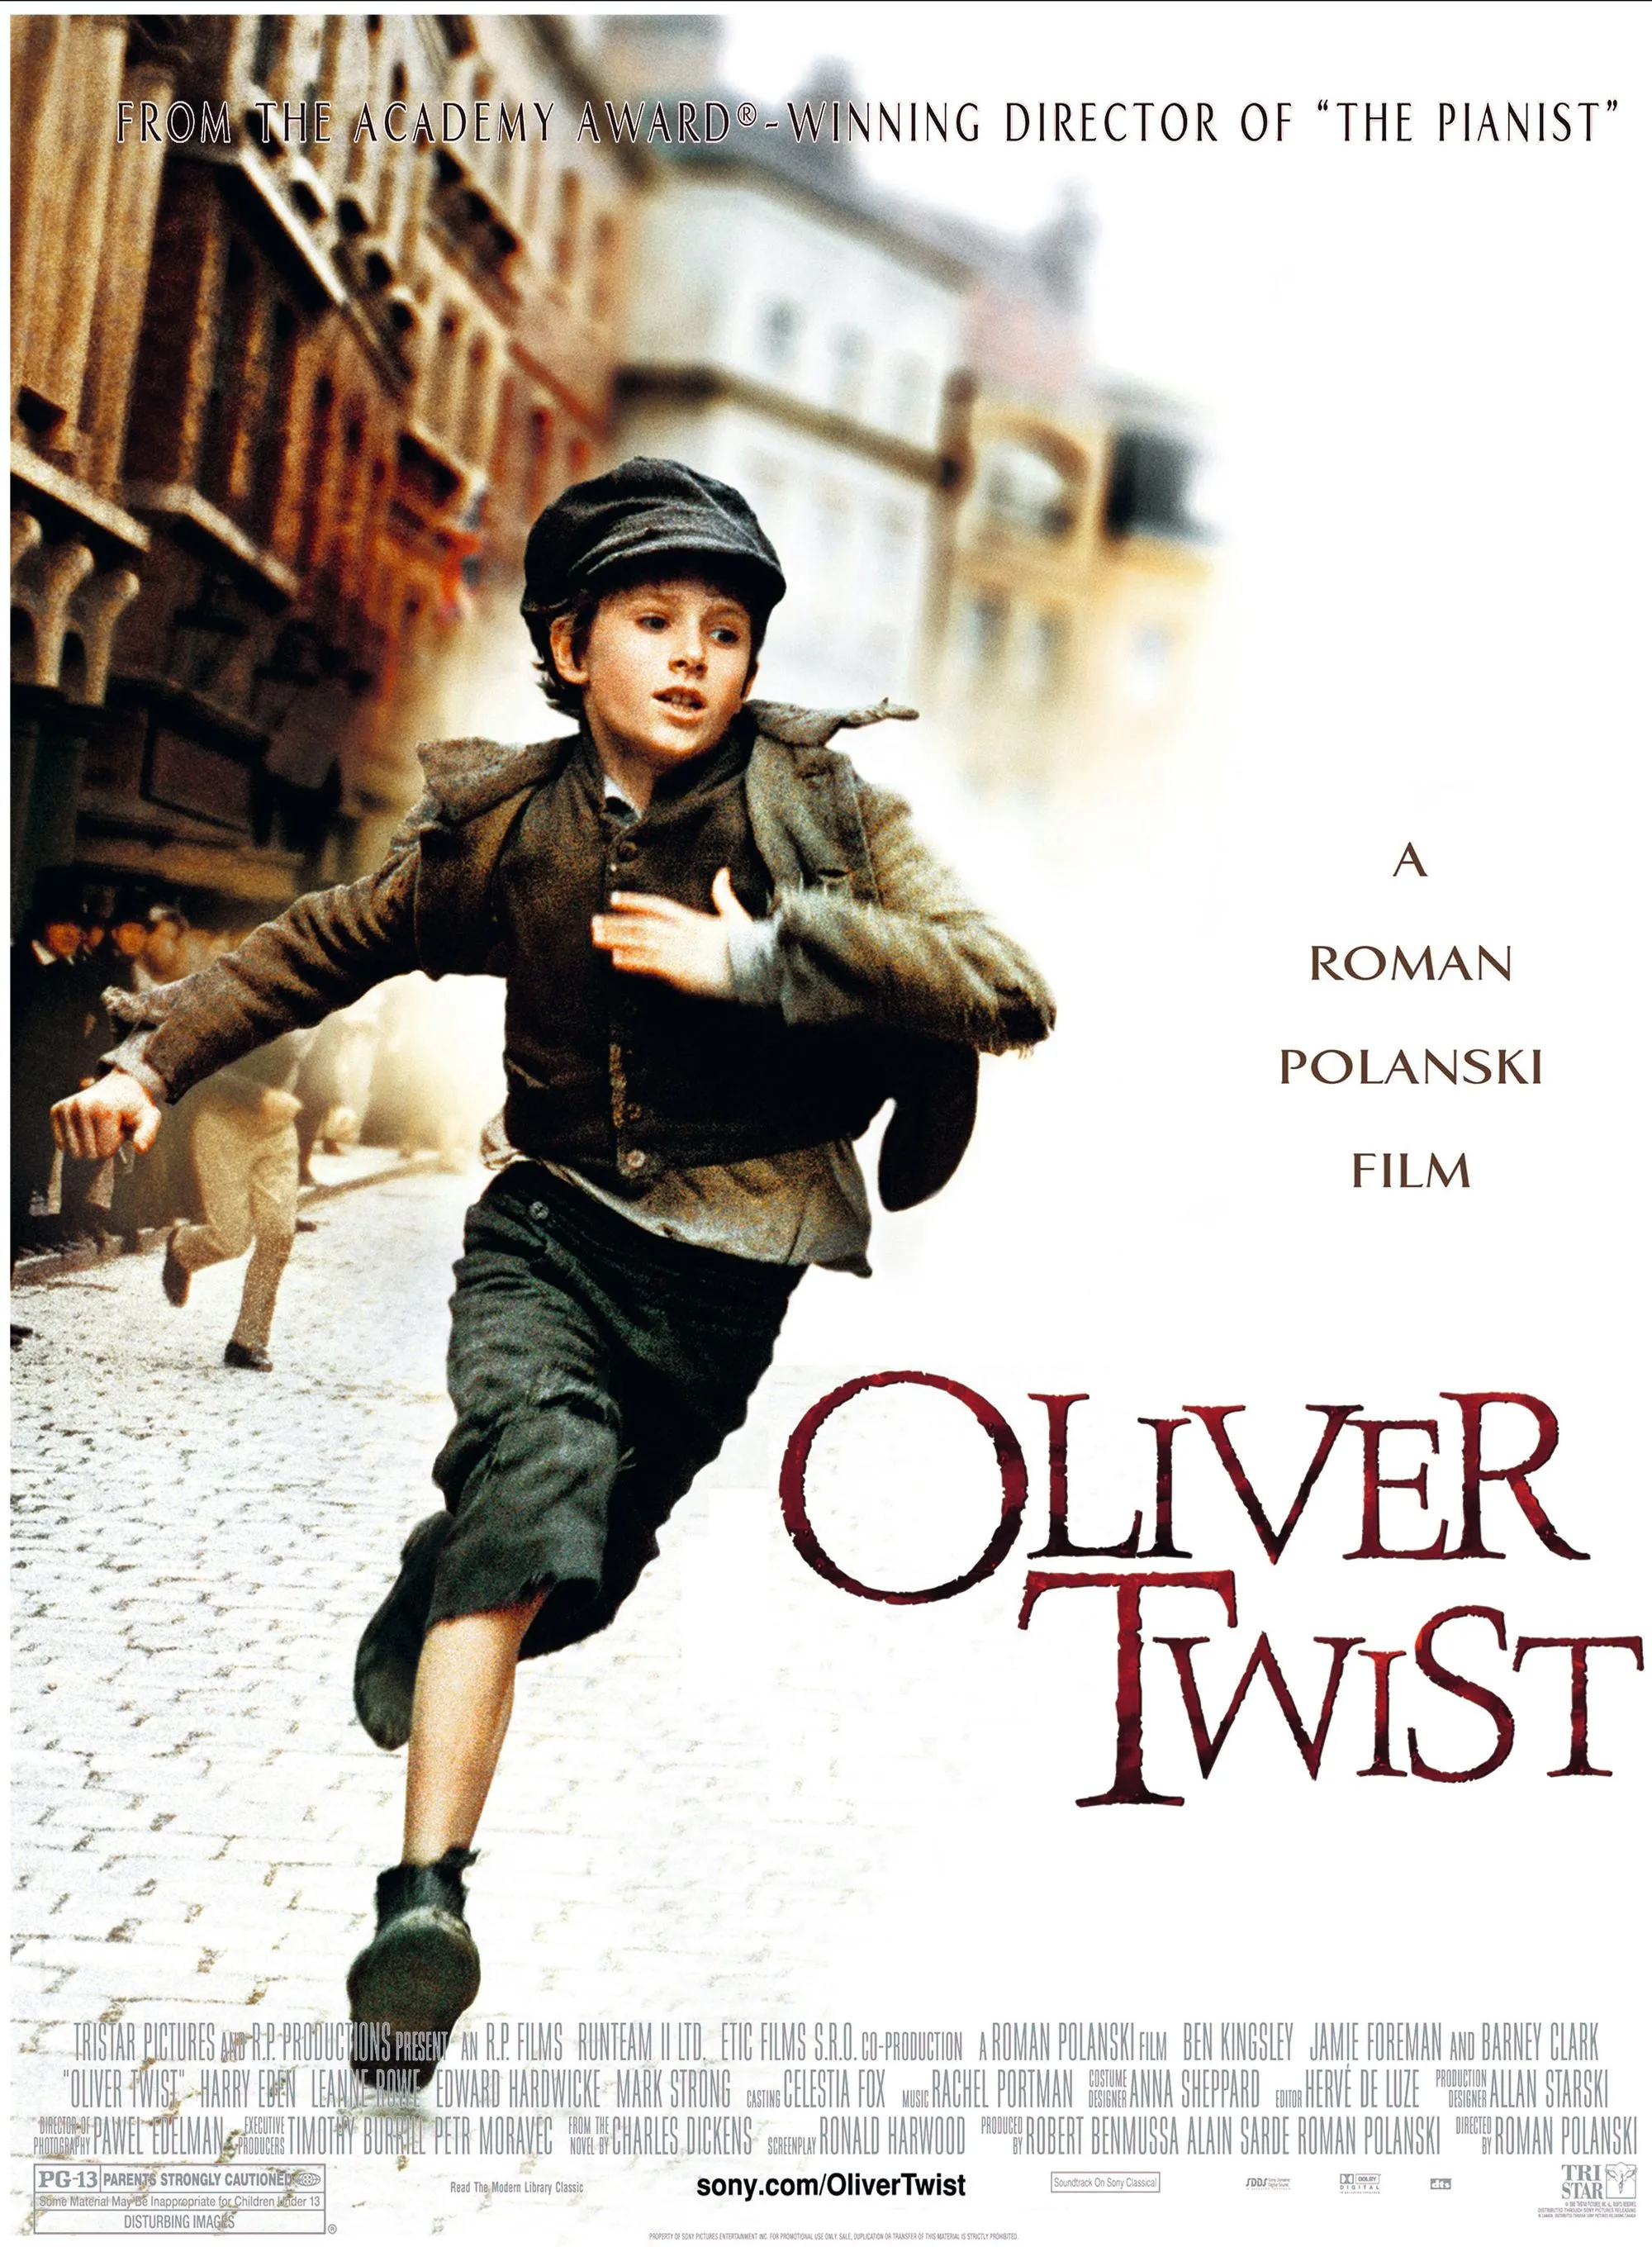 Oliver Twist, by Roman Polansky, 2005.